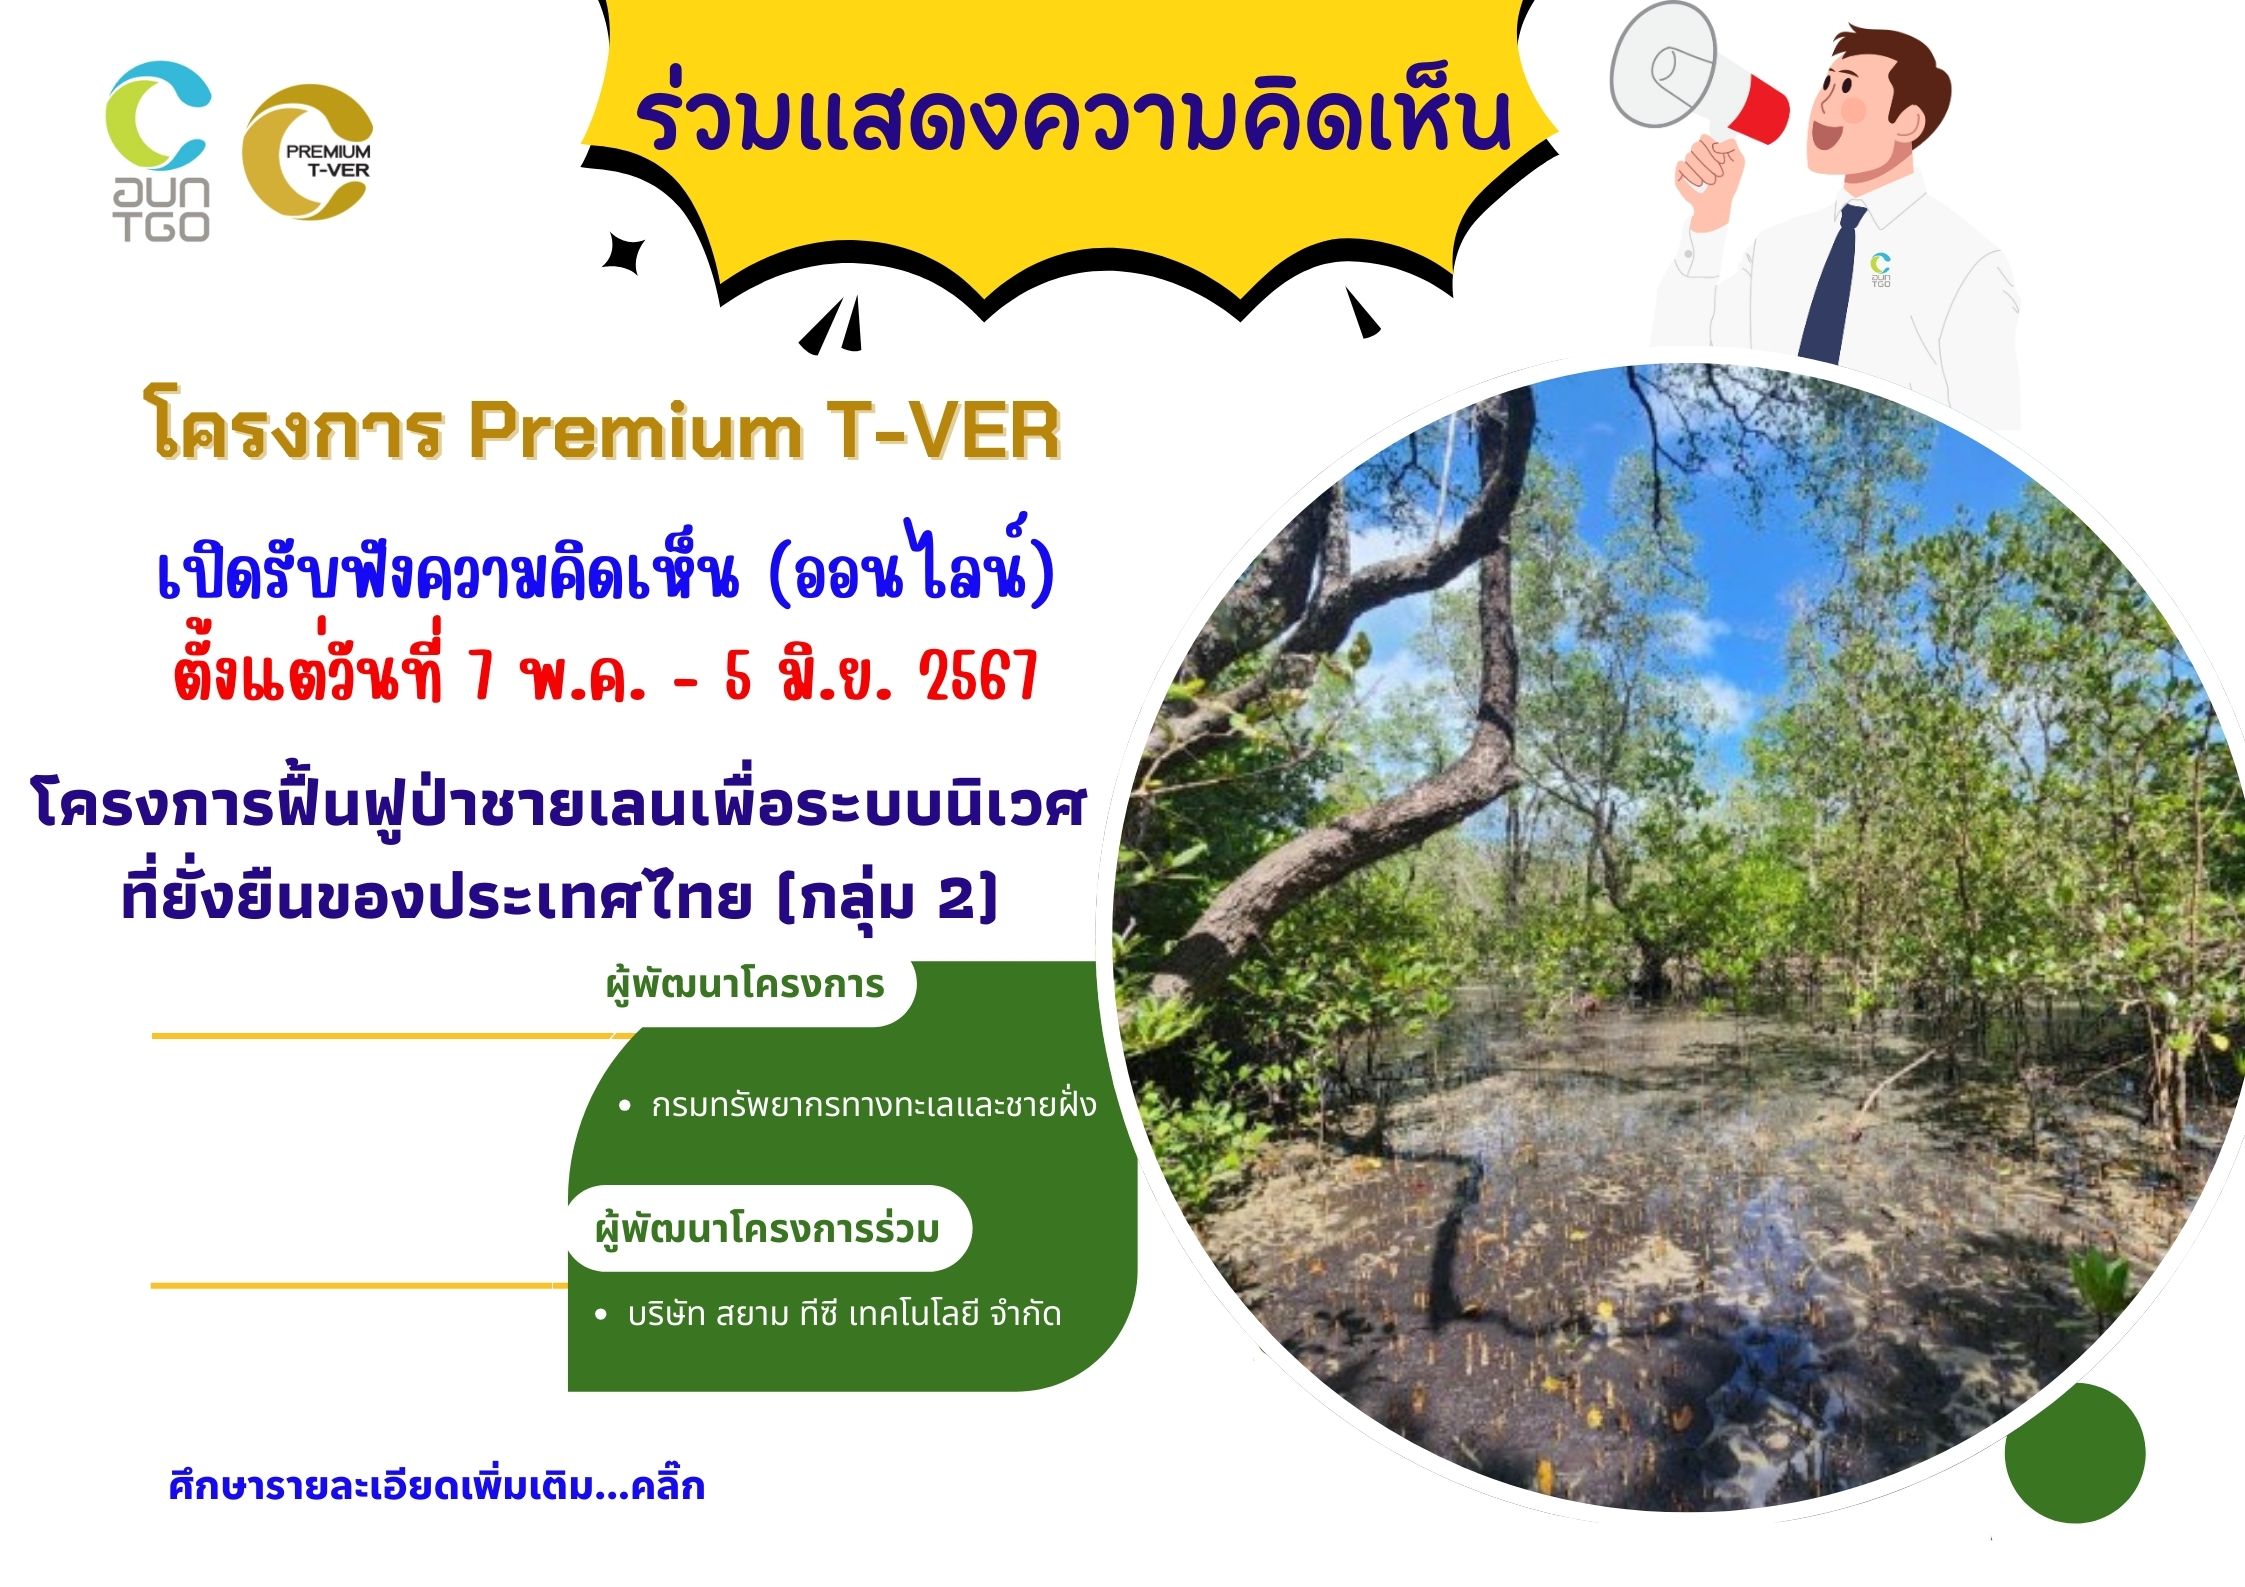 รับฟังความคิดเห็นโครงการฟื้นฟูป่าชายเลนเพื่อระบบนิเวศที่ยั่งยืนของประเทศไทย กลุ่ม 2